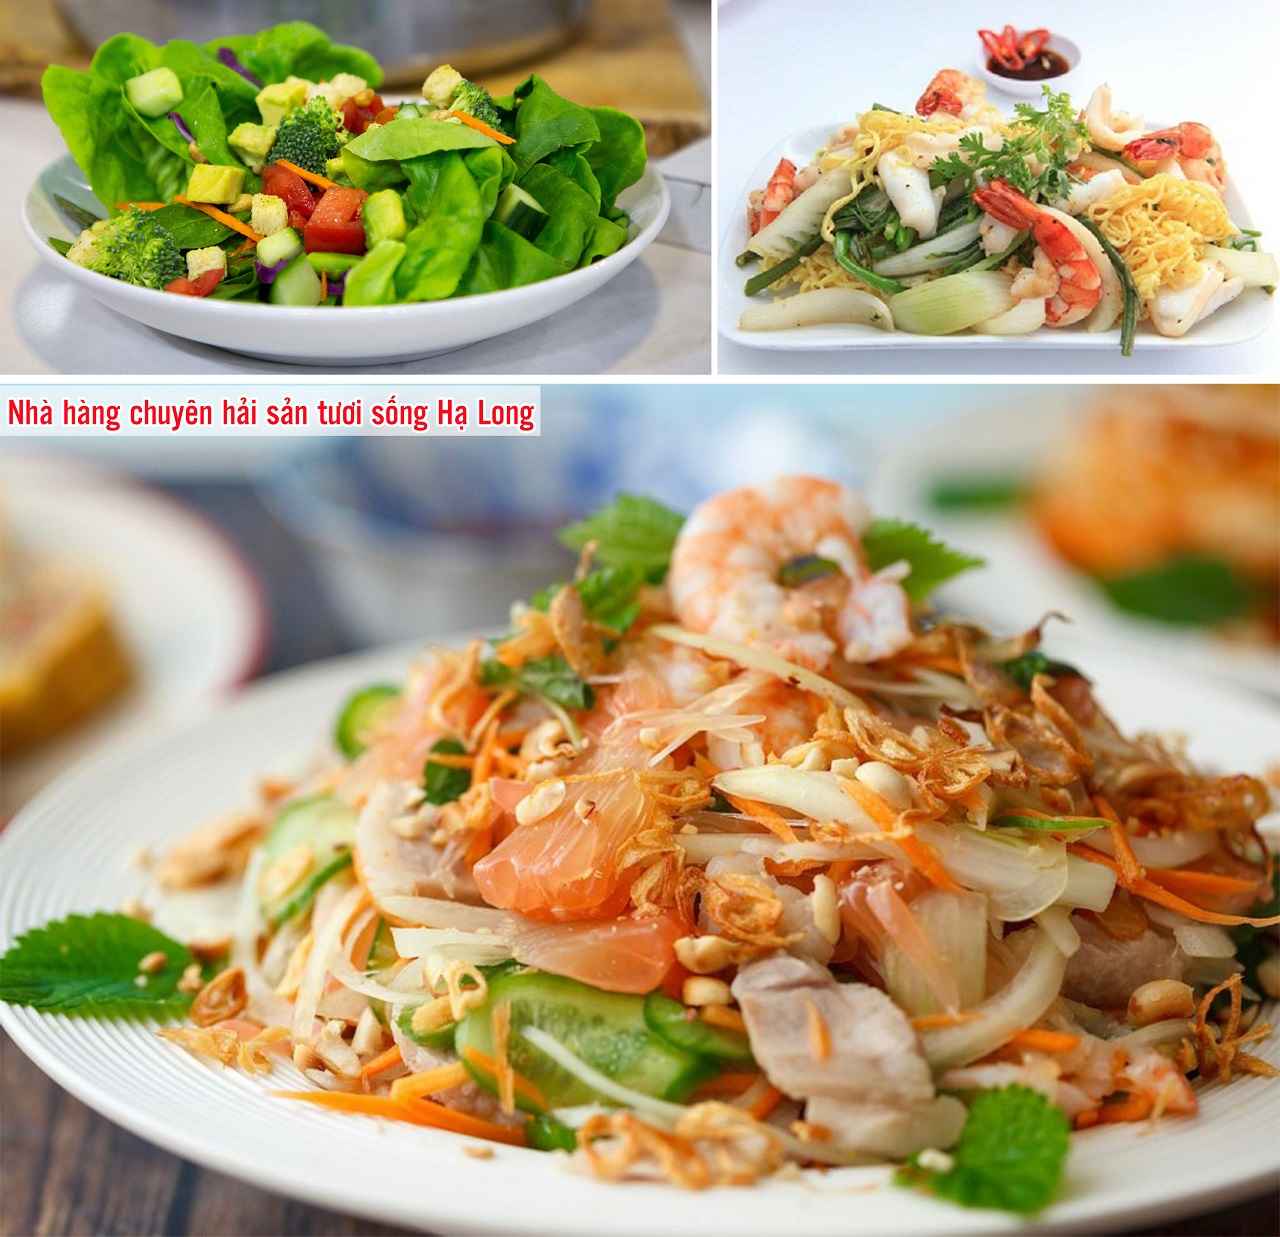 Nhà hàng chuyên hải sản tươi sống Hạ Long